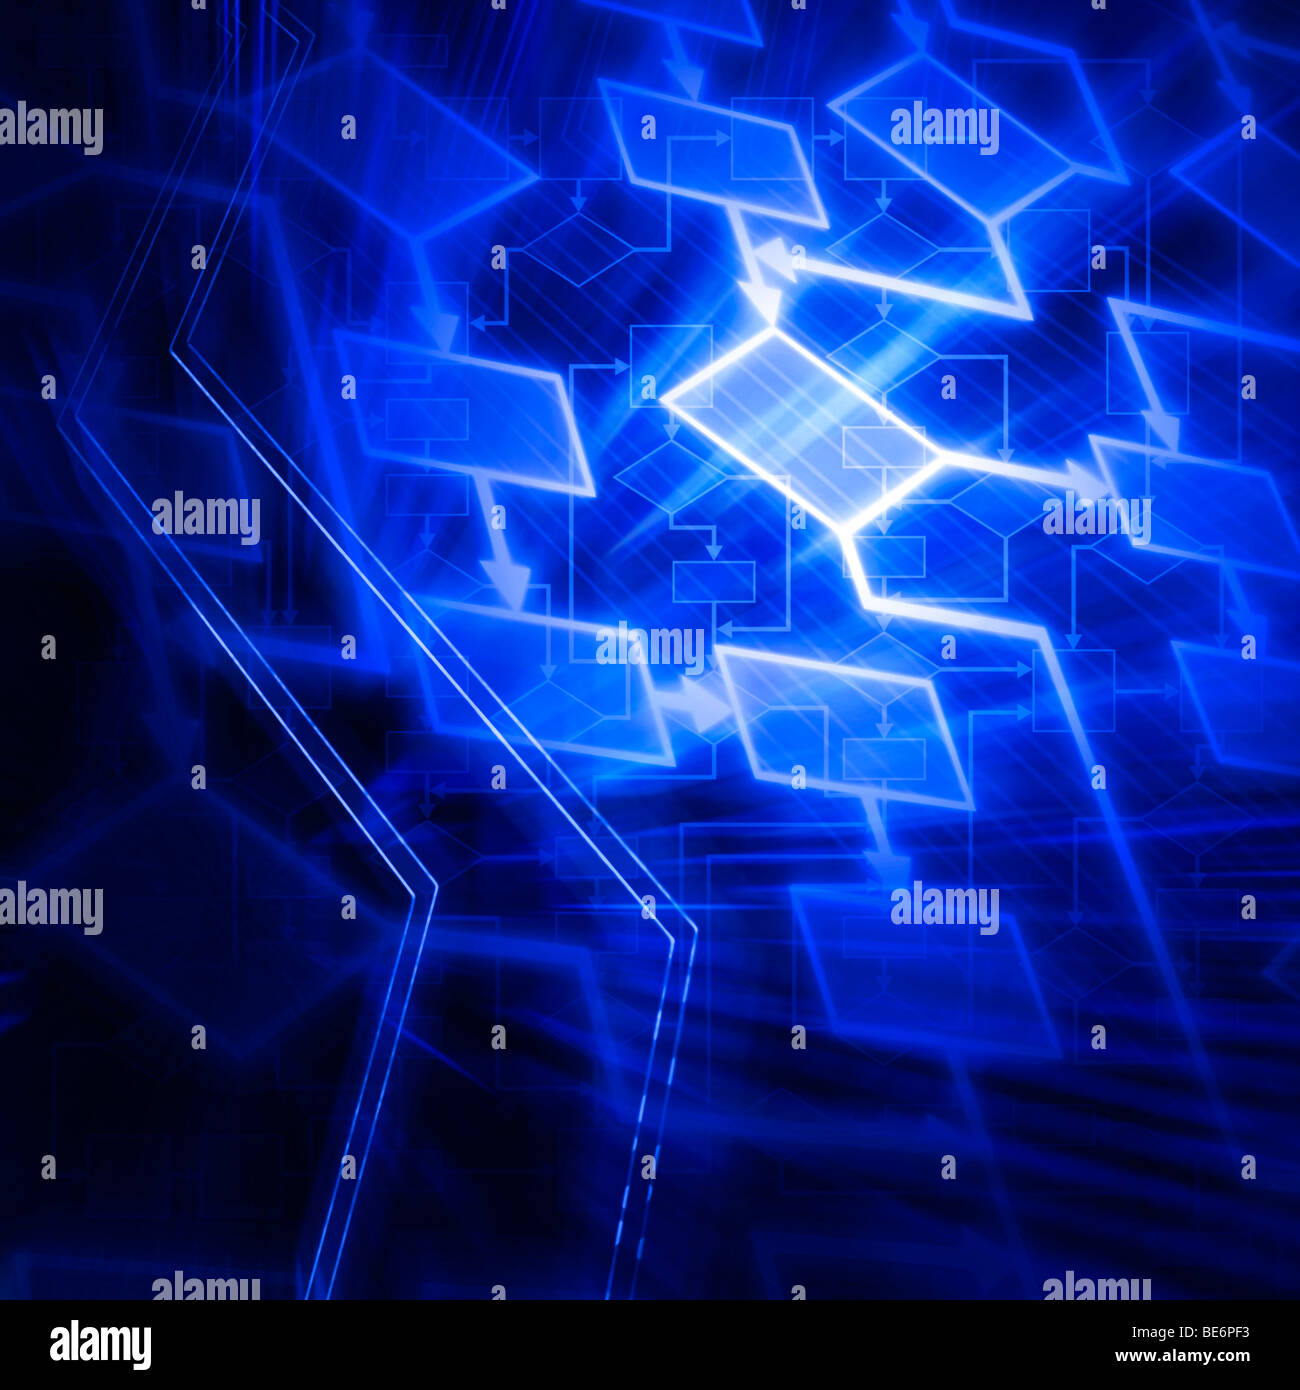 Leuchtende blaue Flussdiagramm-Diagramm Stockfoto